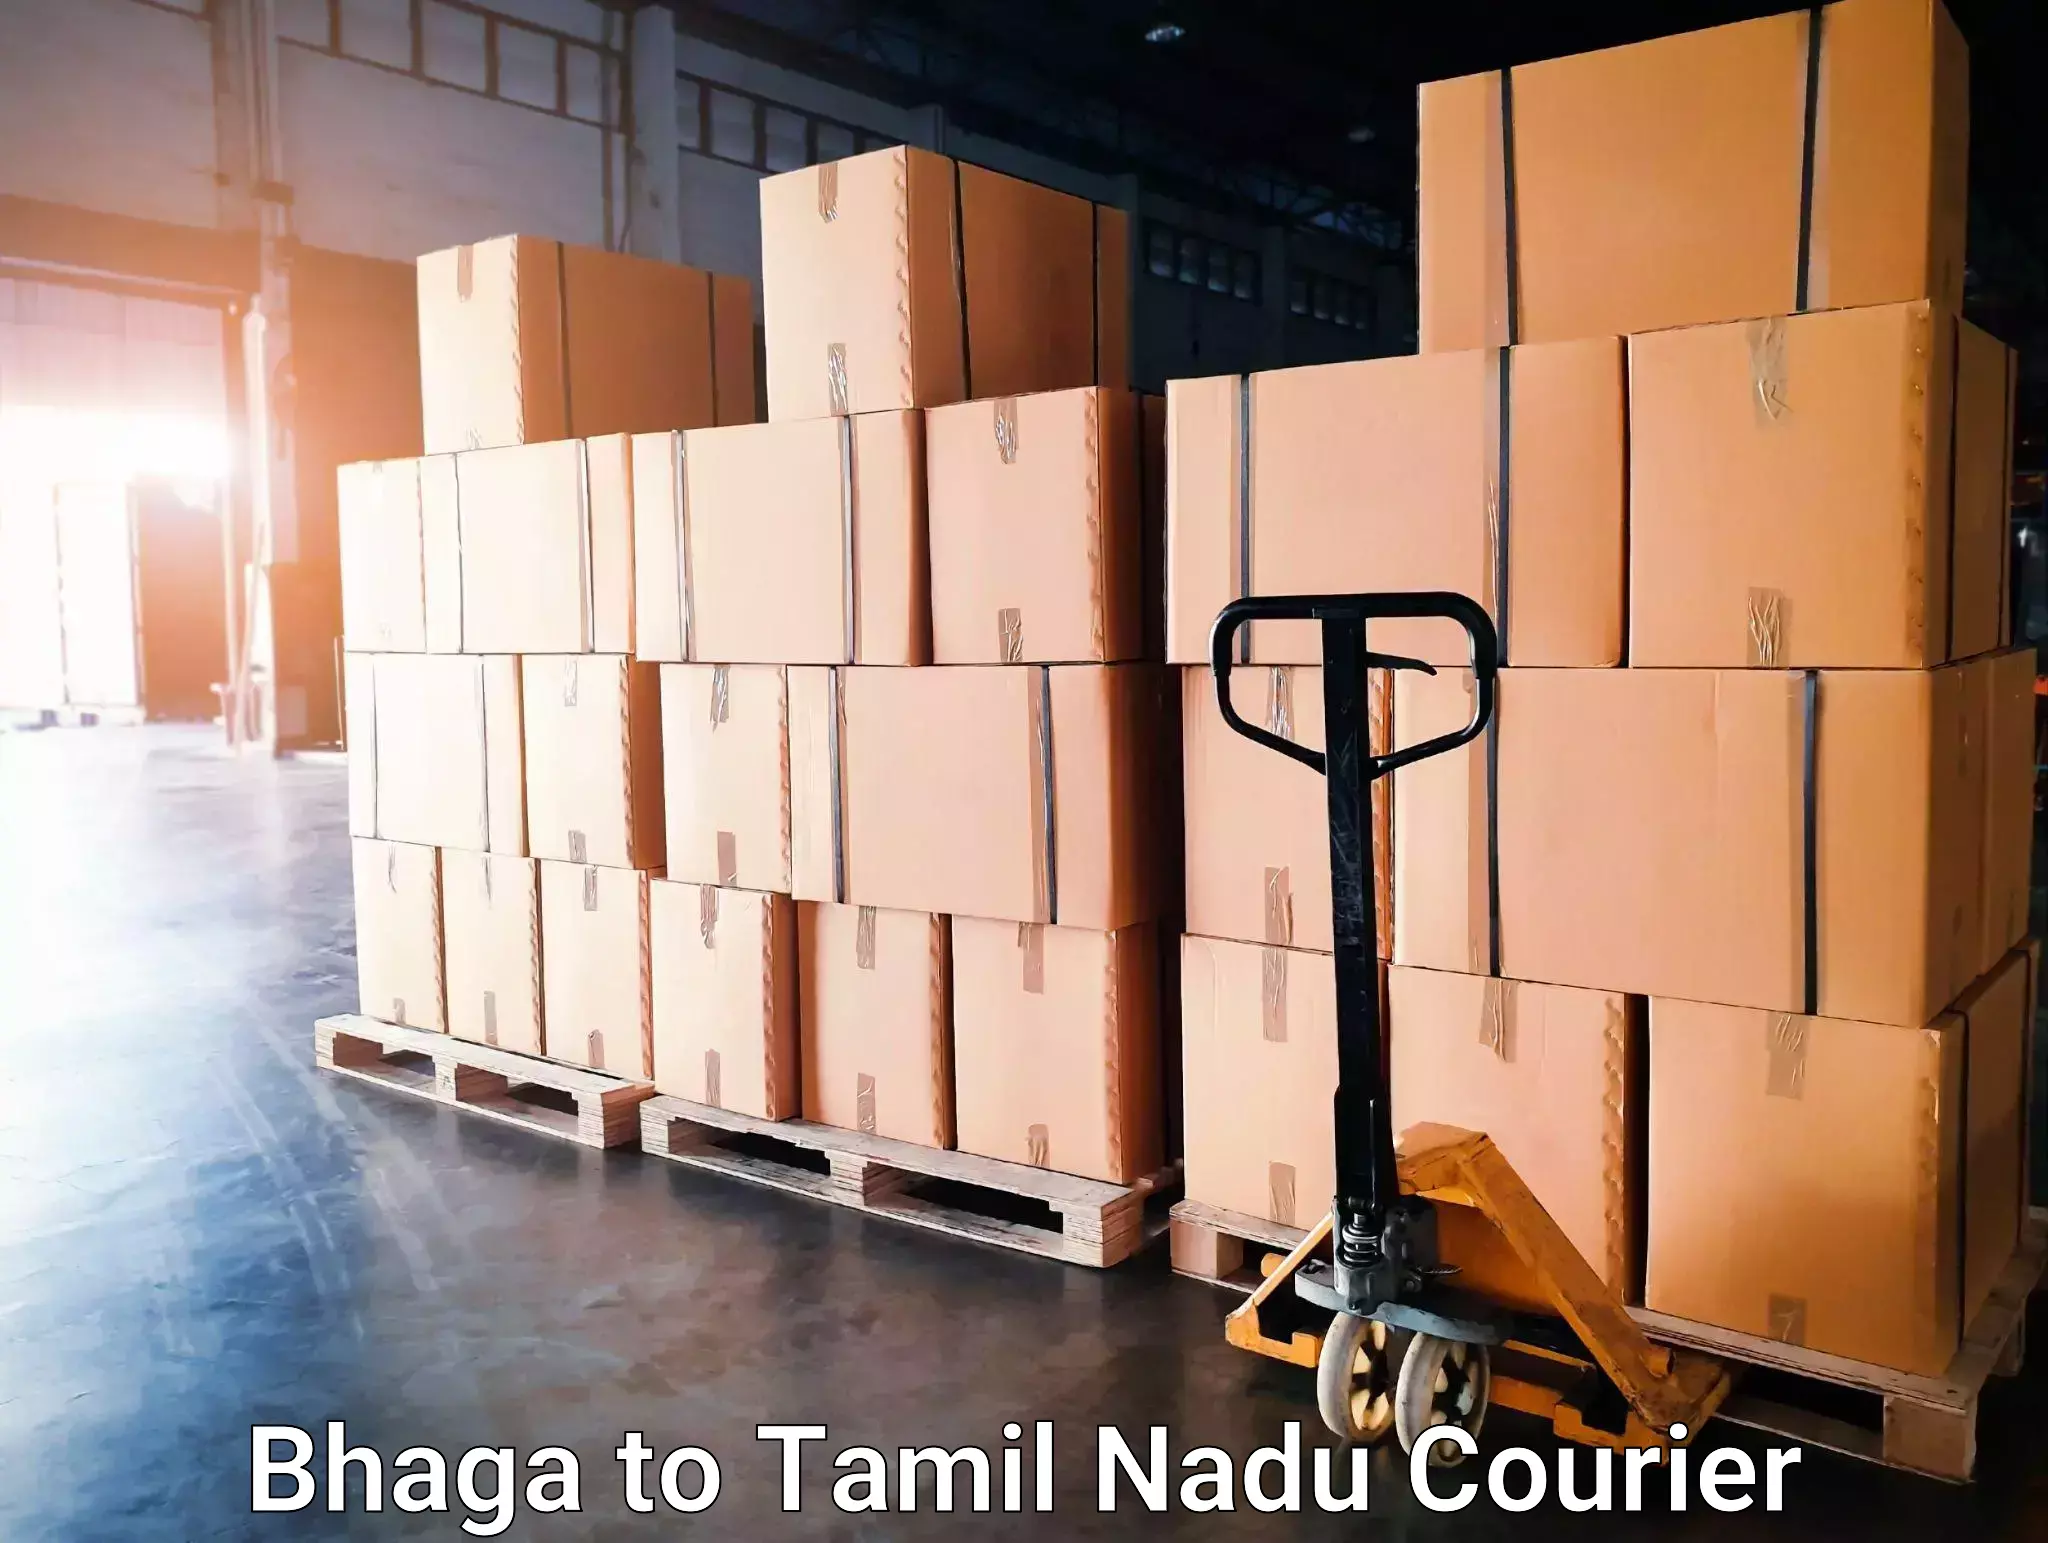 Courier dispatch services Bhaga to Tirupattur